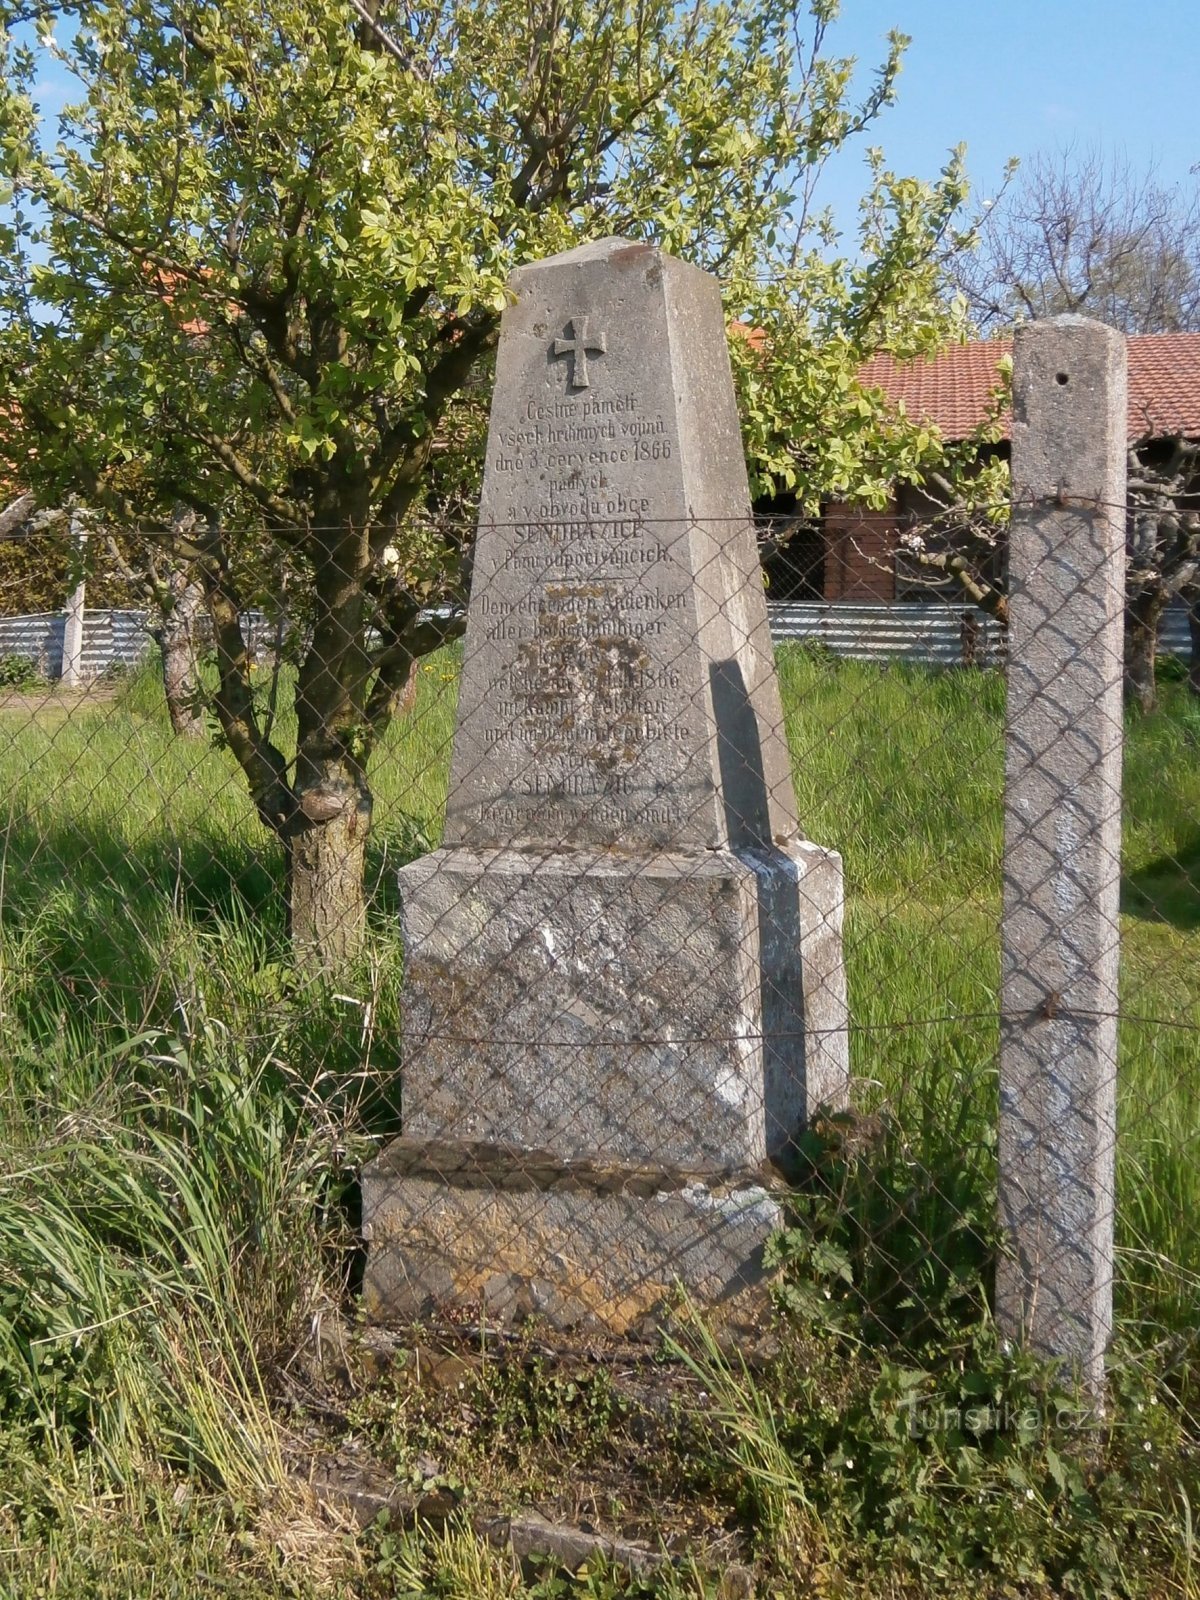 Памятник павшим солдатам в прусско-австрийской войне 1866 г. (Сендражице, 1.5.2017 мая XNUMX г.)